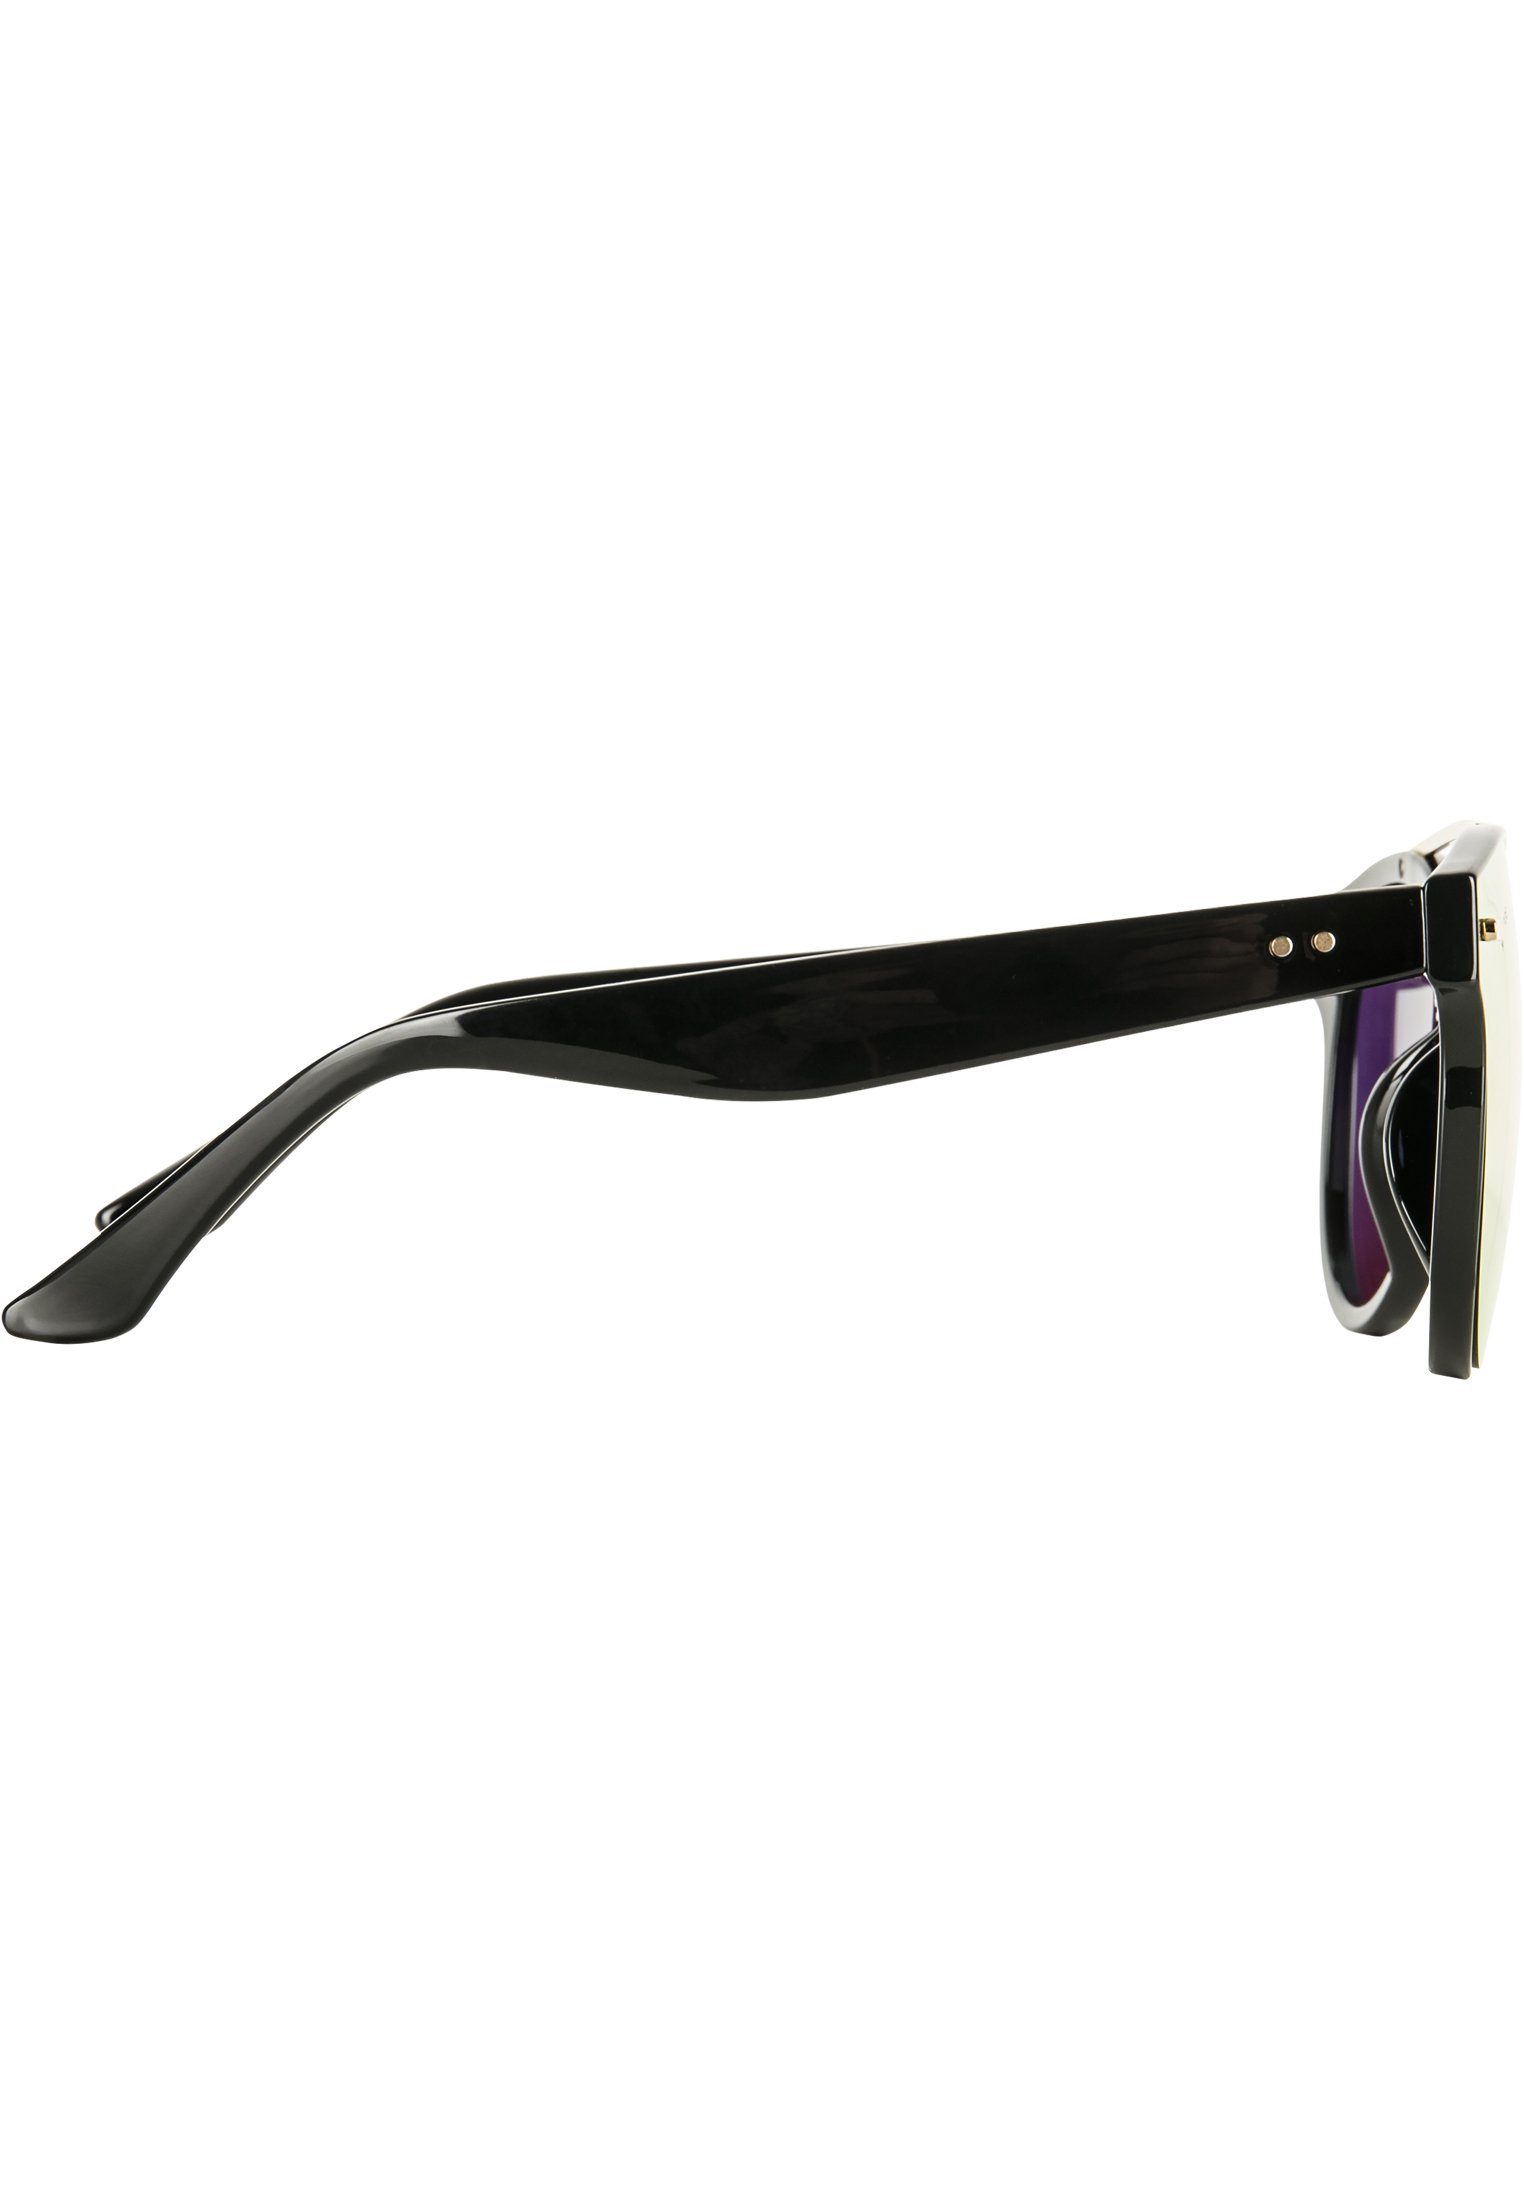 Sonnenbrille MSTRDS Sunglasses June Accessoires